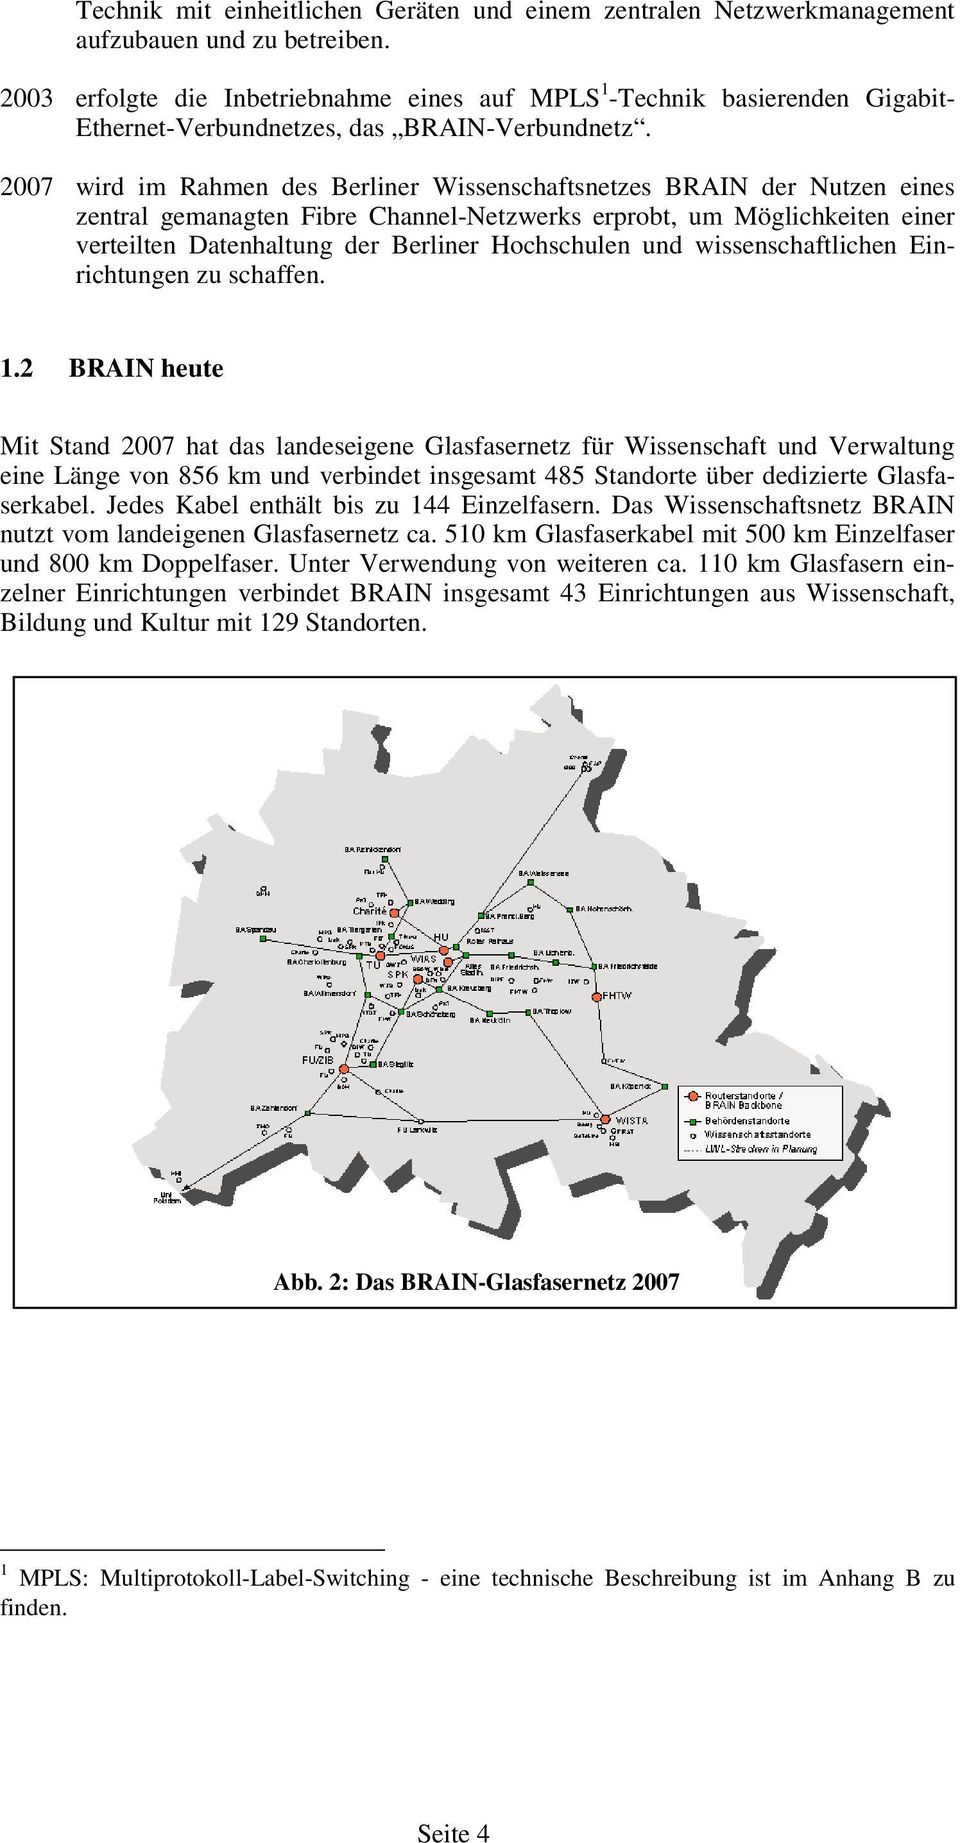 2007 wird im Rahmen des Berliner Wissenschaftsnetzes BRAIN der Nutzen eines zentral gemanagten Fibre Channel-Netzwerks erprobt, um Möglichkeiten einer verteilten Datenhaltung der Berliner Hochschulen